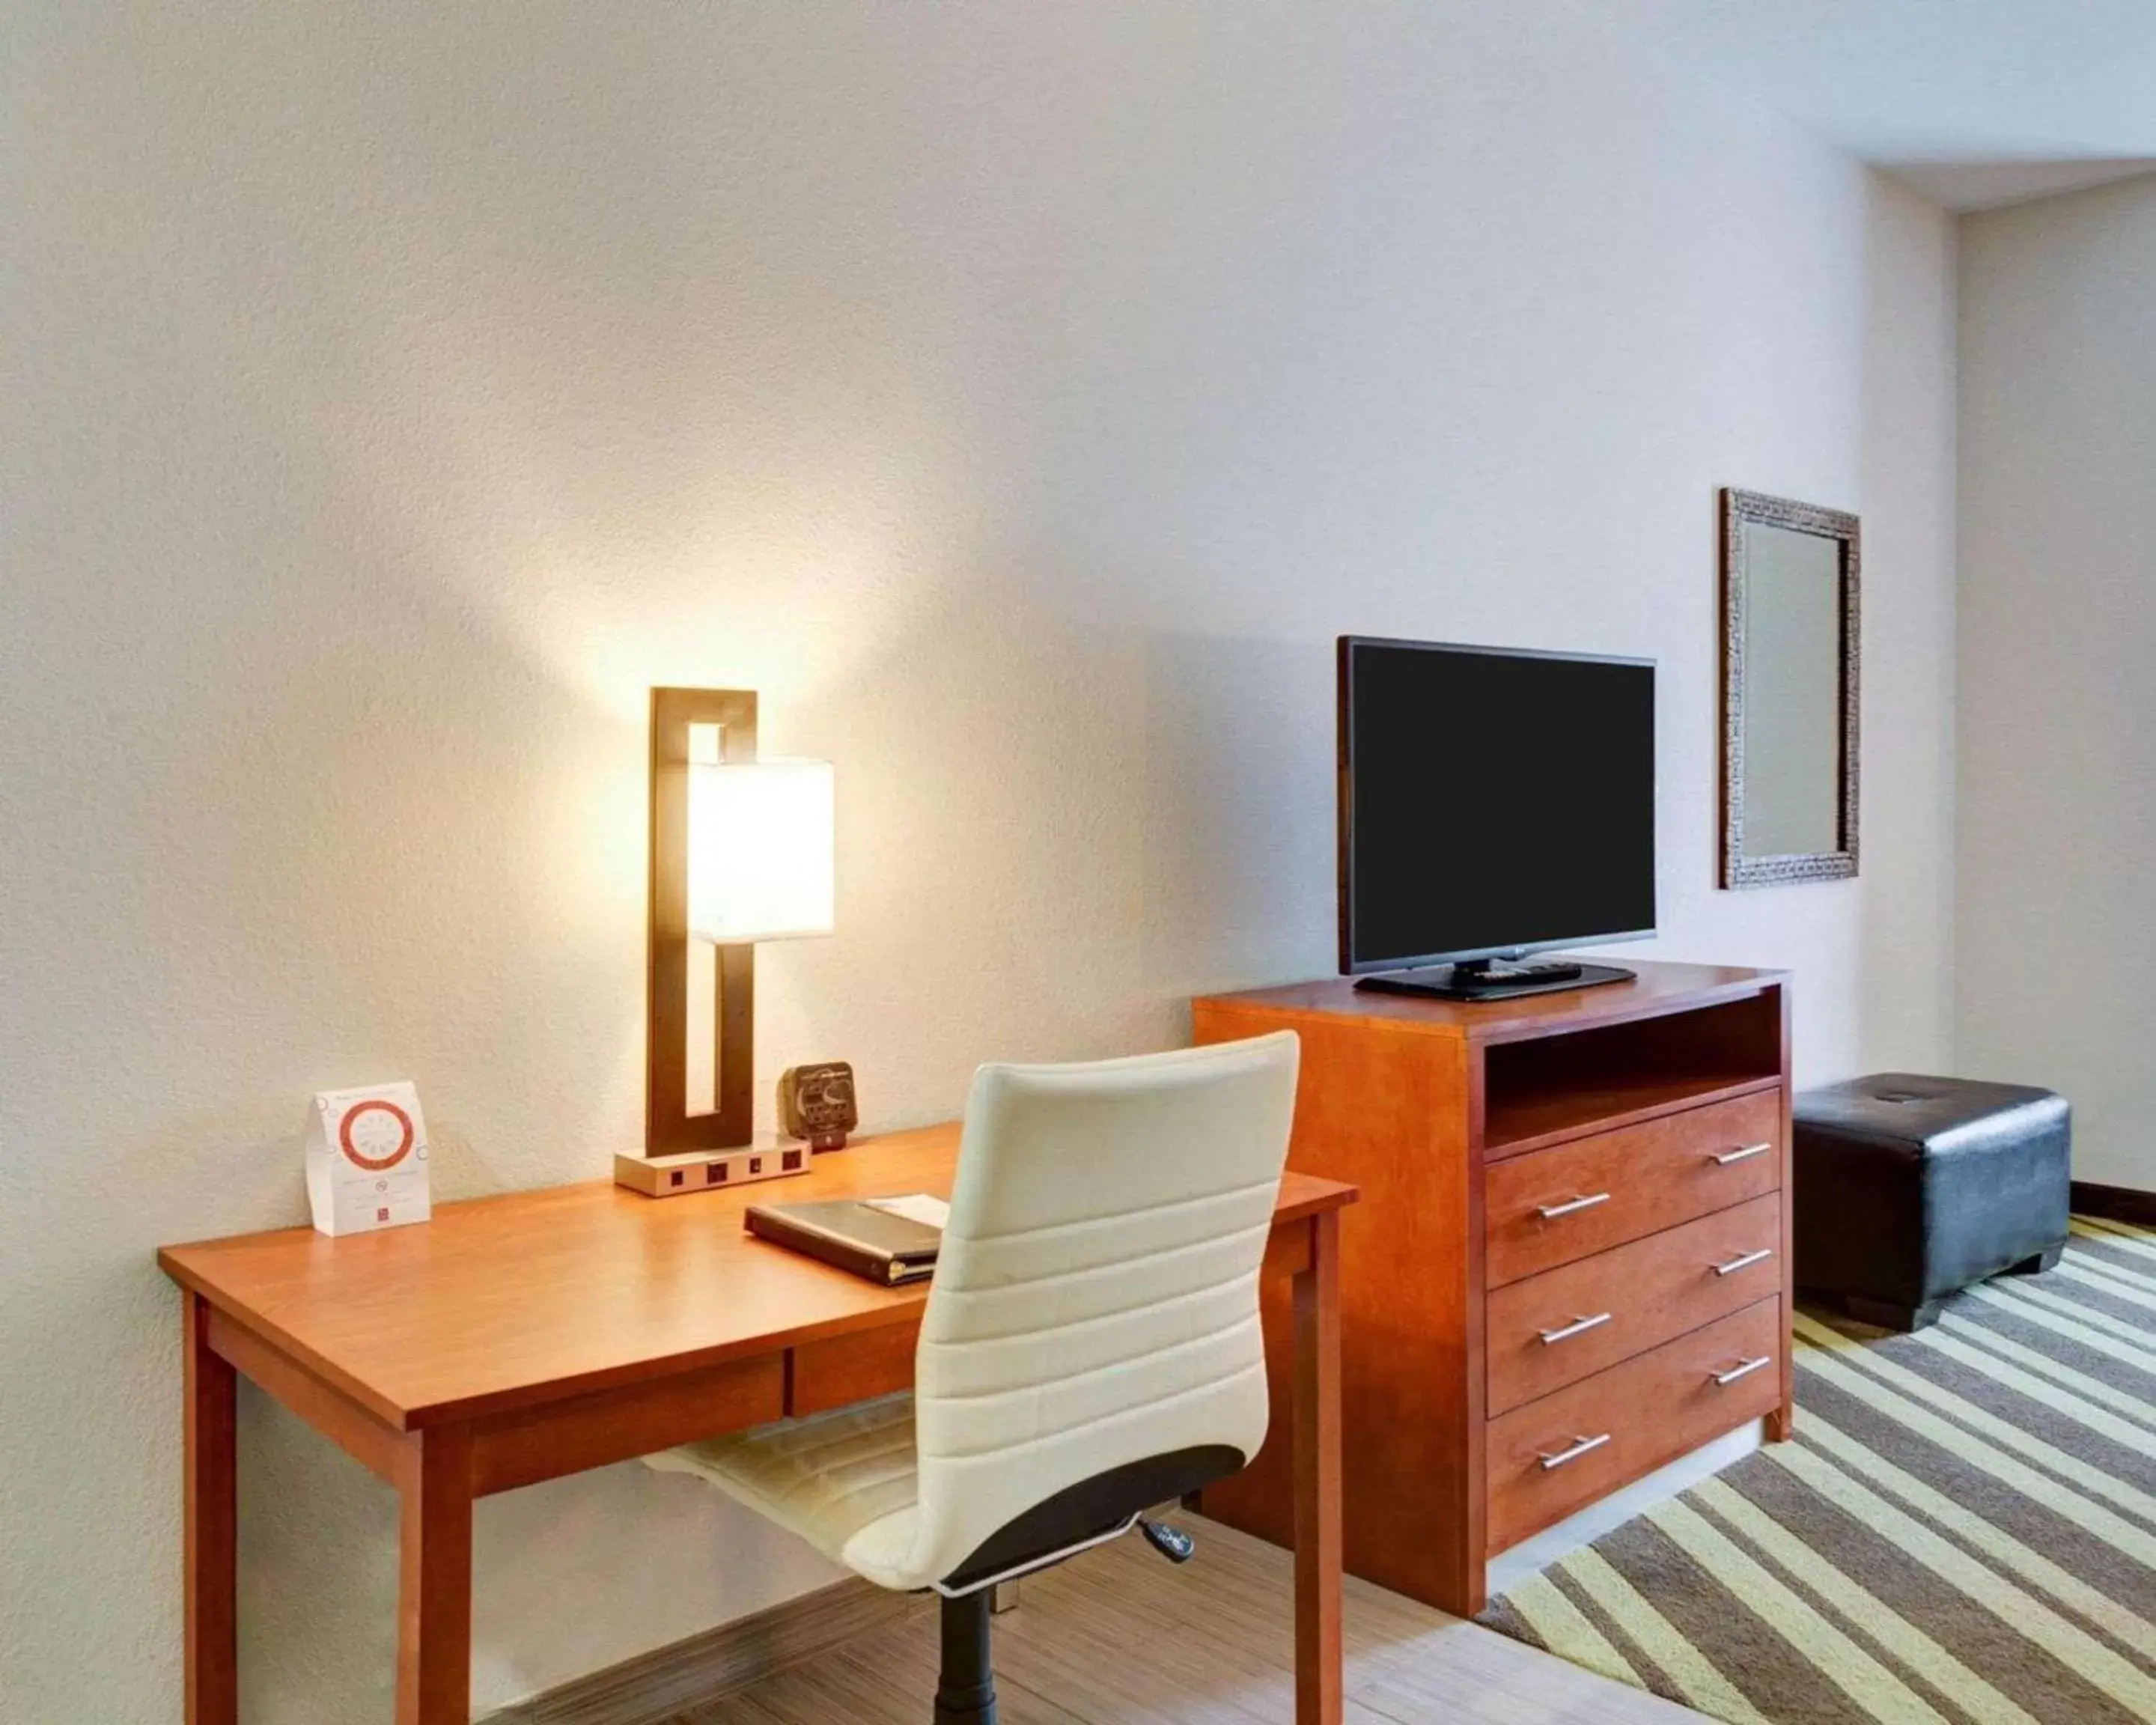 Bedroom, TV/Entertainment Center in Comfort Suites Denham Springs